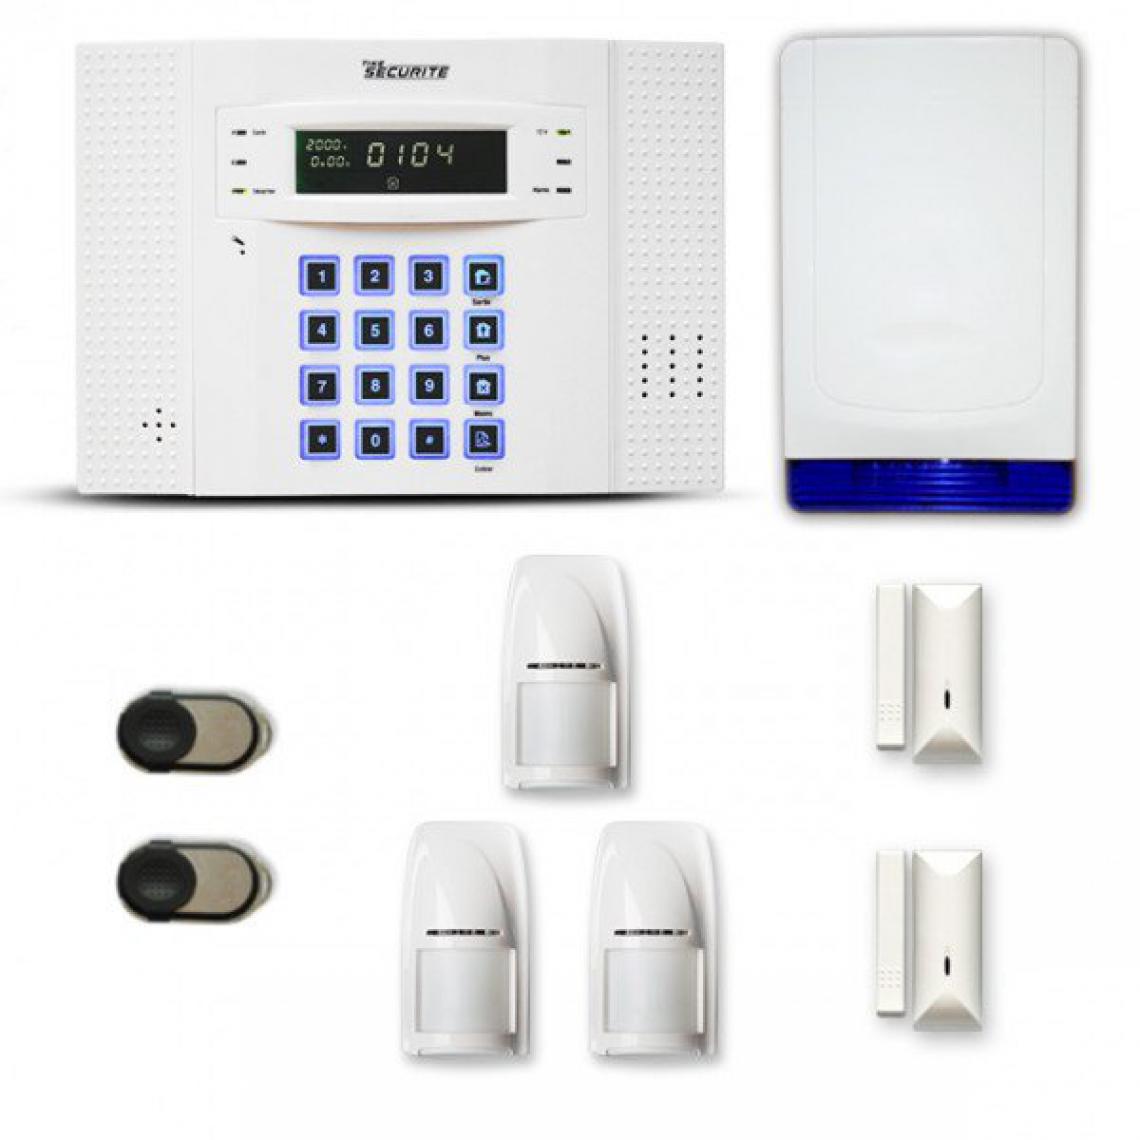 Tike Securite - Alarme maison sans fil DNB35 Compatible Box internet et GSM - Alarme connectée